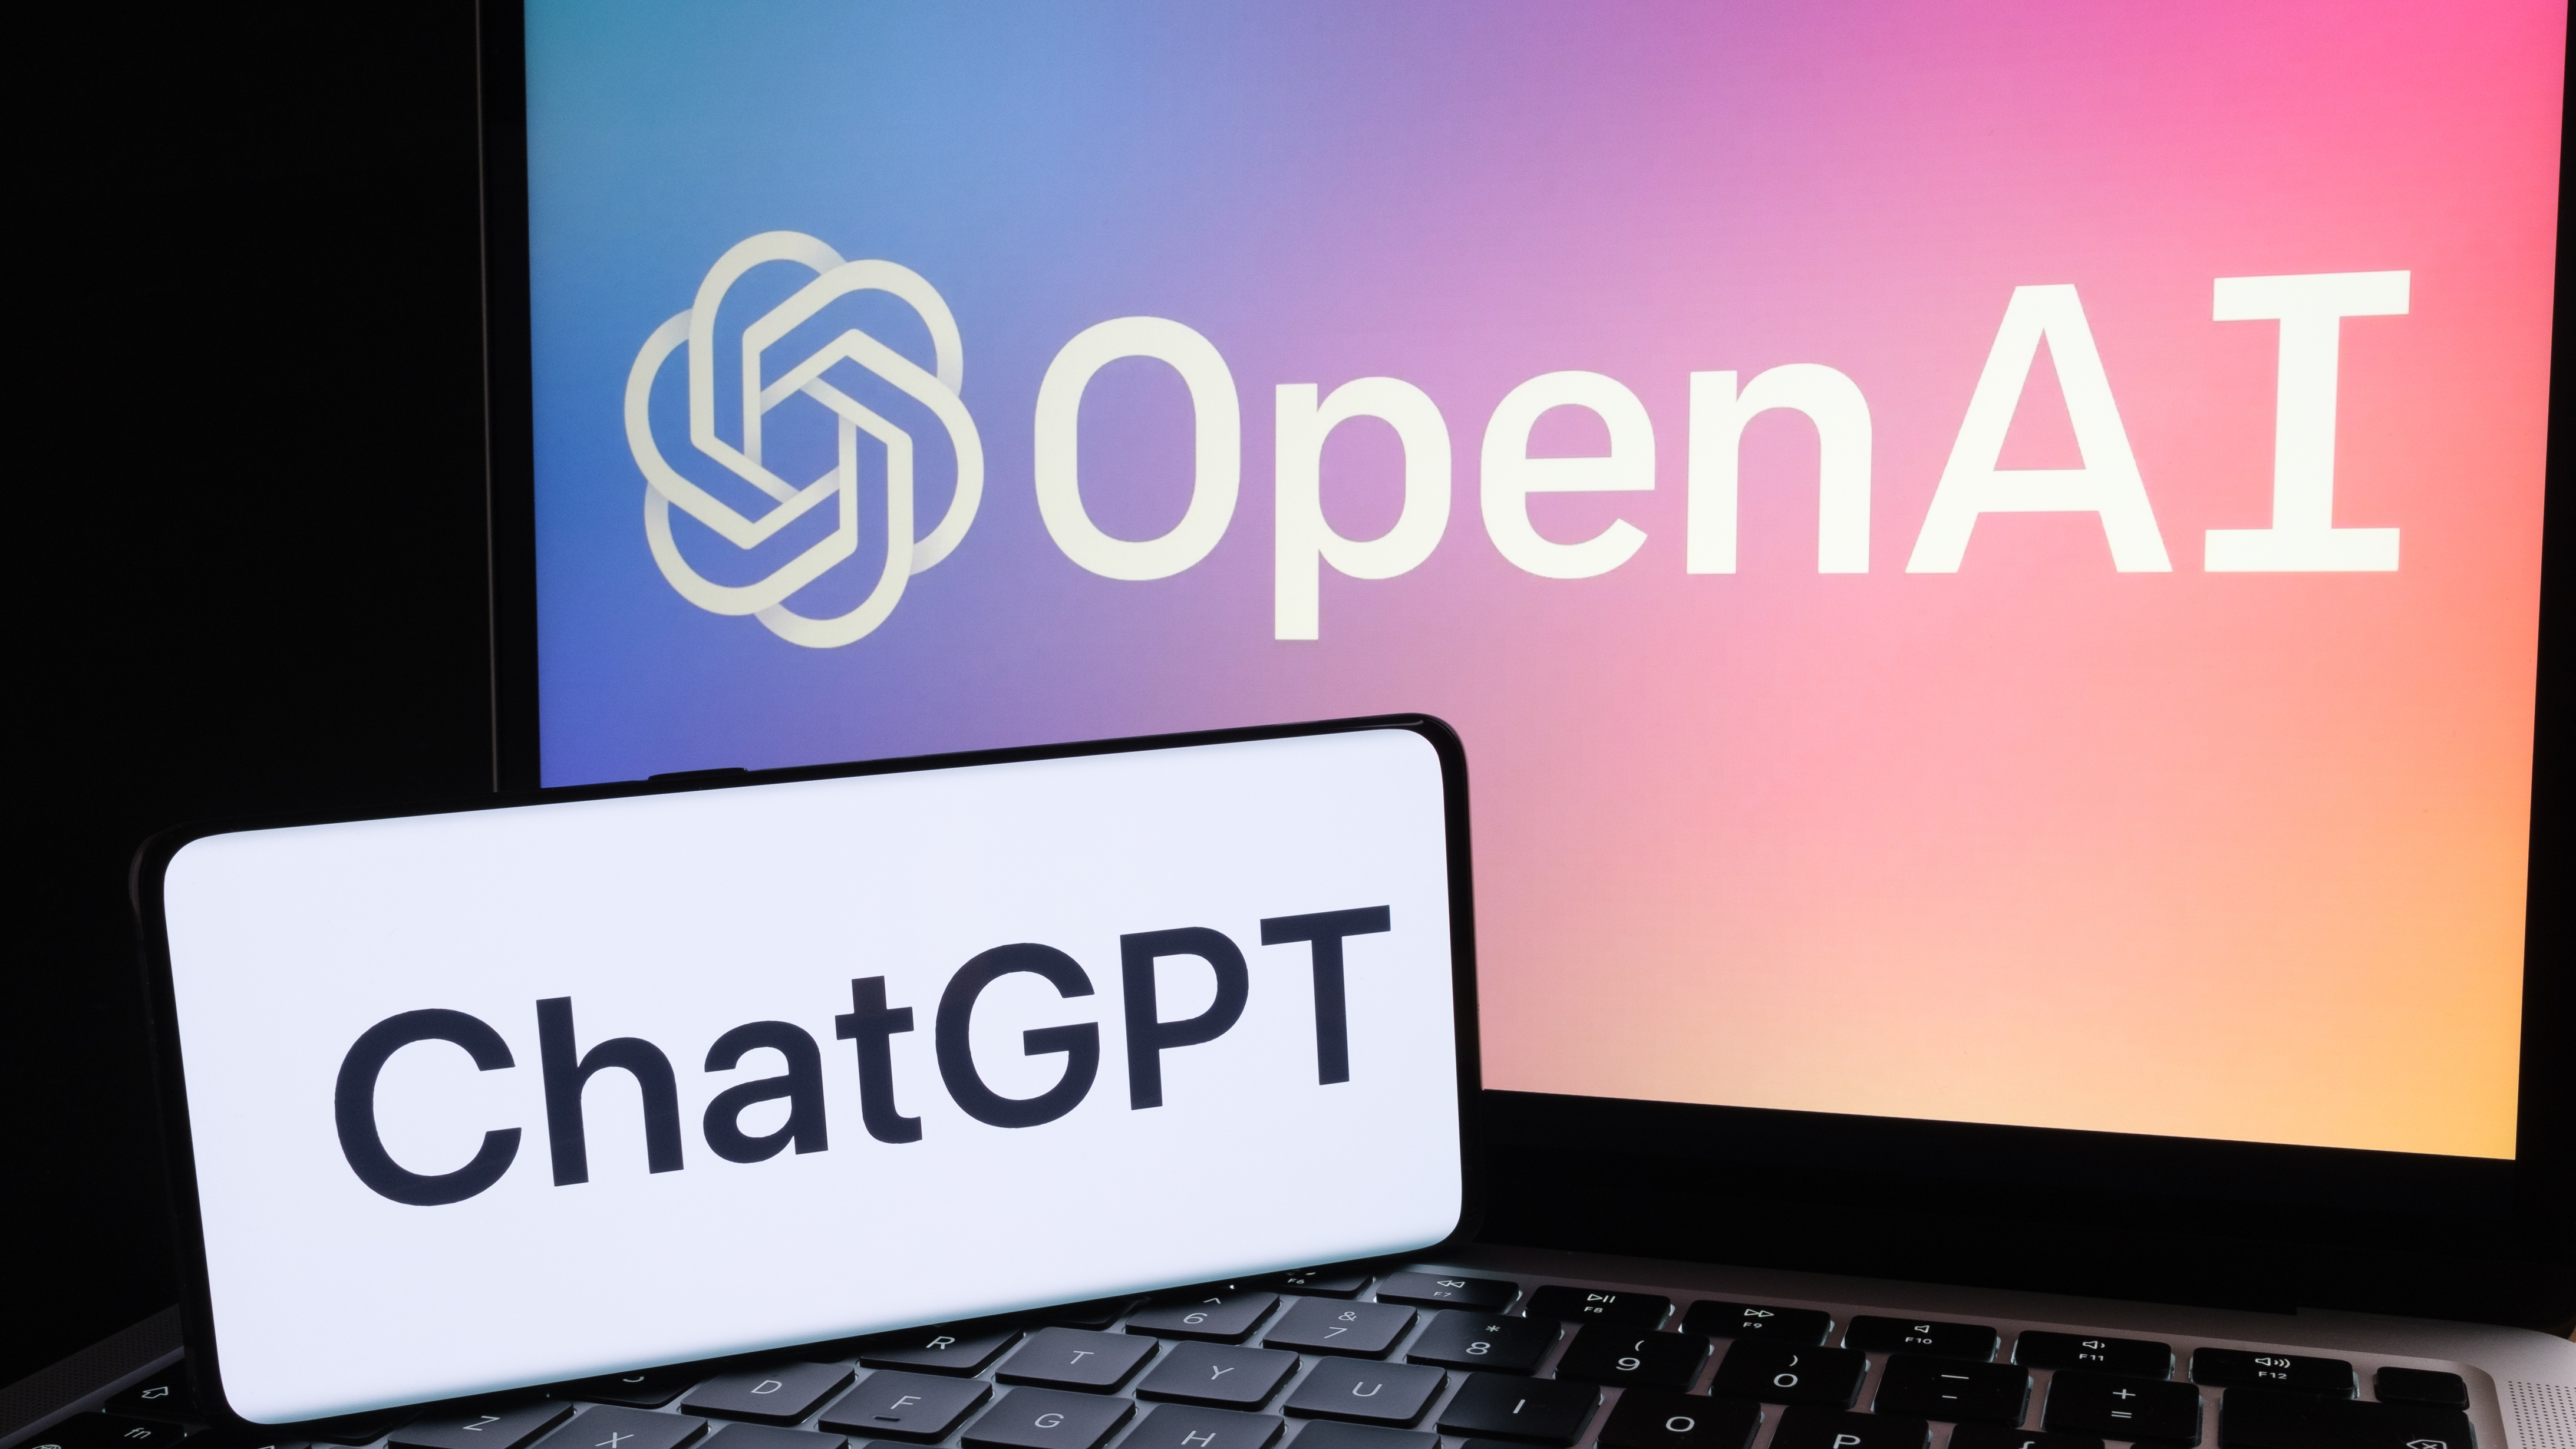 טלפון עם לוגו ChatGPT ומחשב נייד עם הלוגו של OpenAI